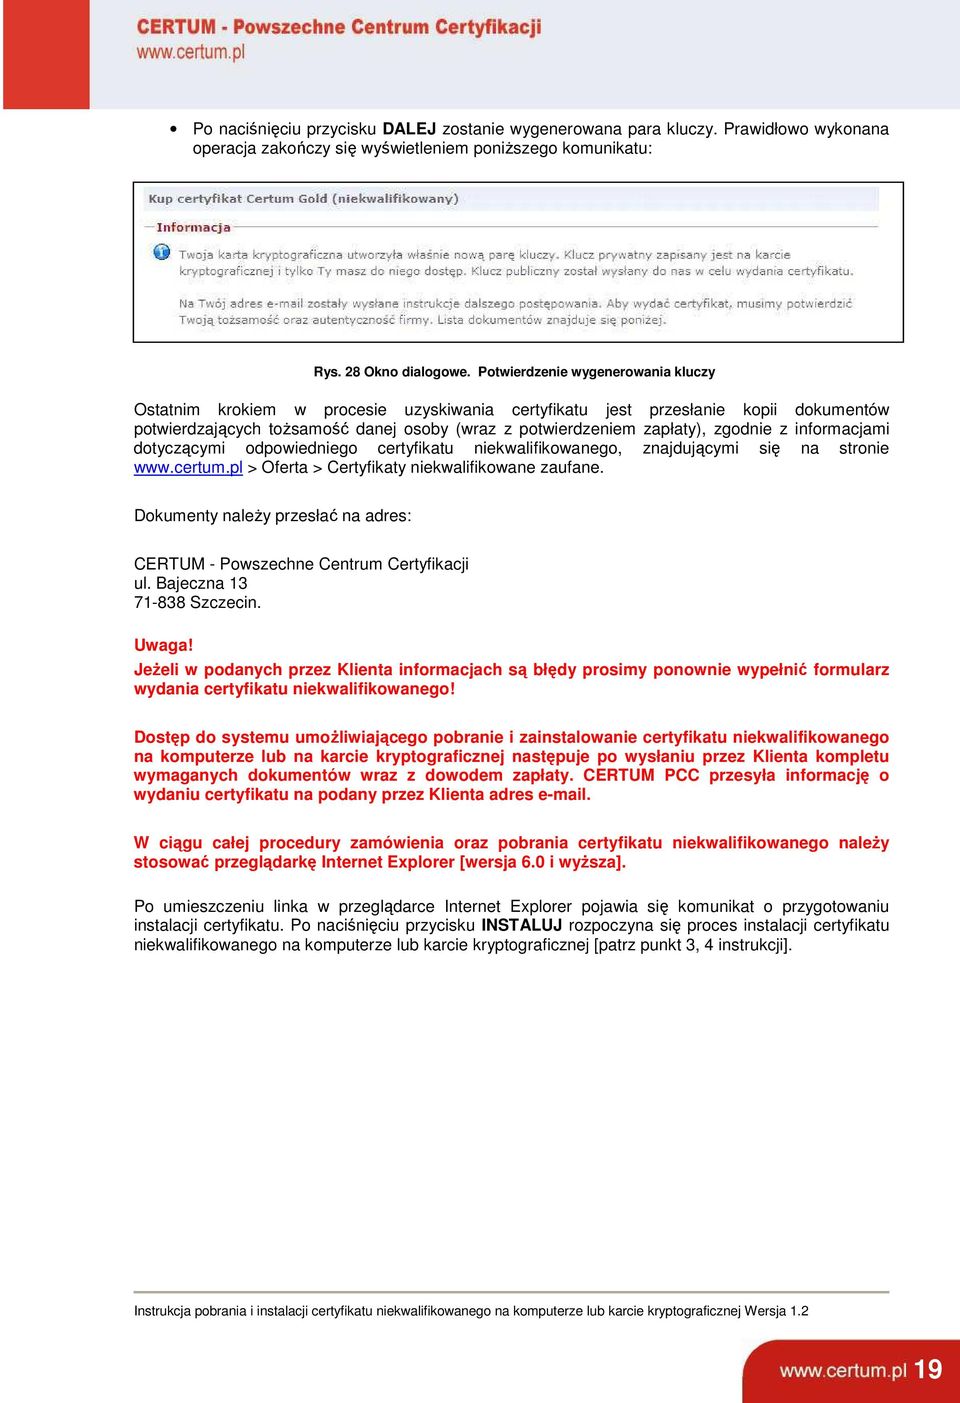 z informacjami dotyczącymi odpowiedniego certyfikatu niekwalifikowanego, znajdującymi się na stronie www.certum.pl > Oferta > Certyfikaty niekwalifikowane zaufane.